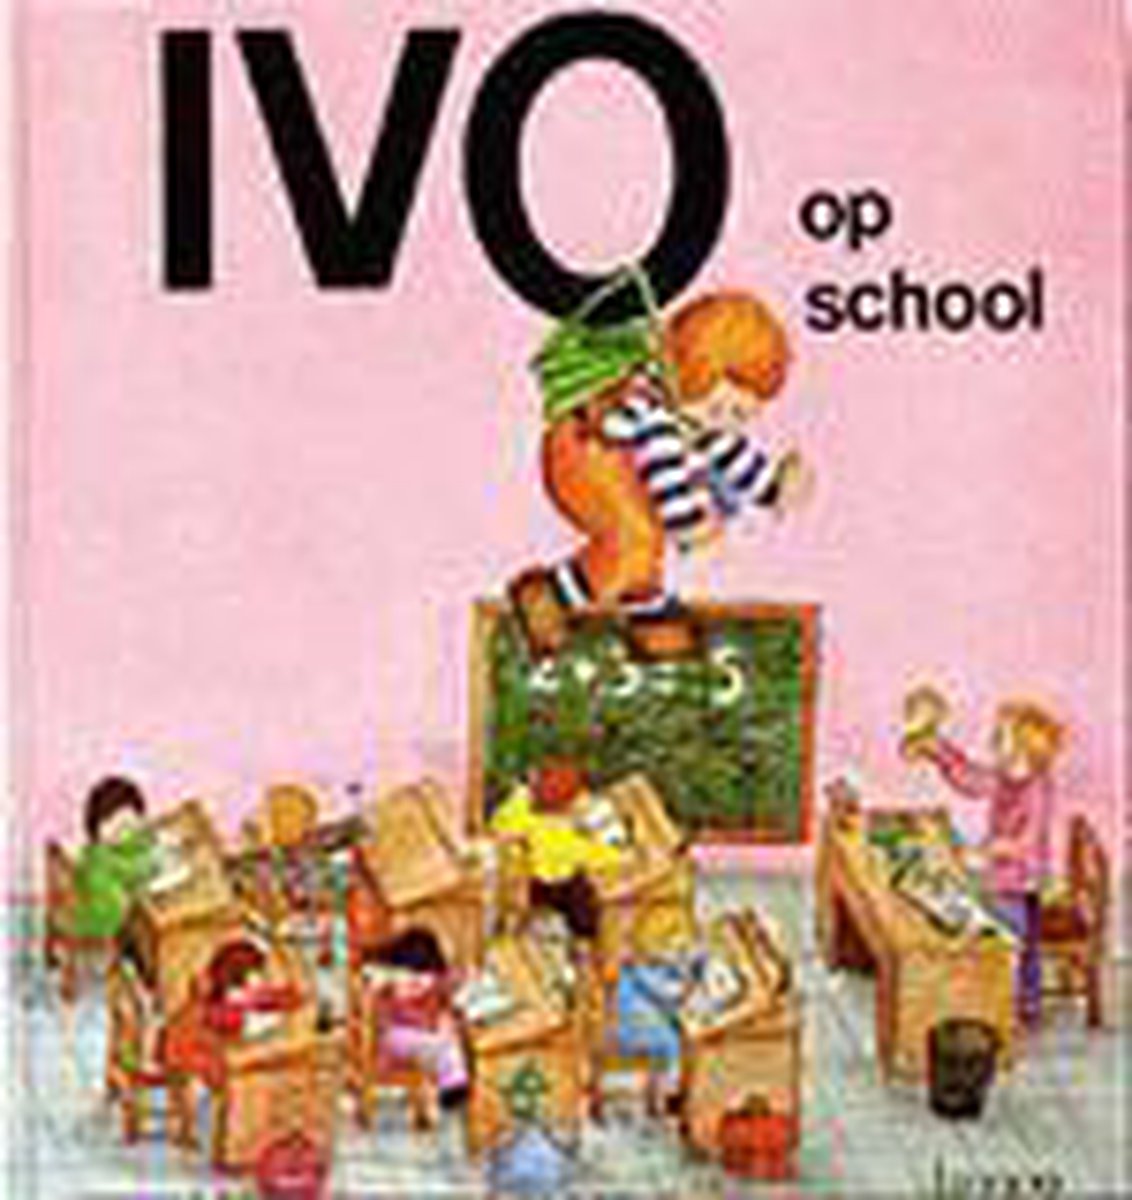 Ivo op school